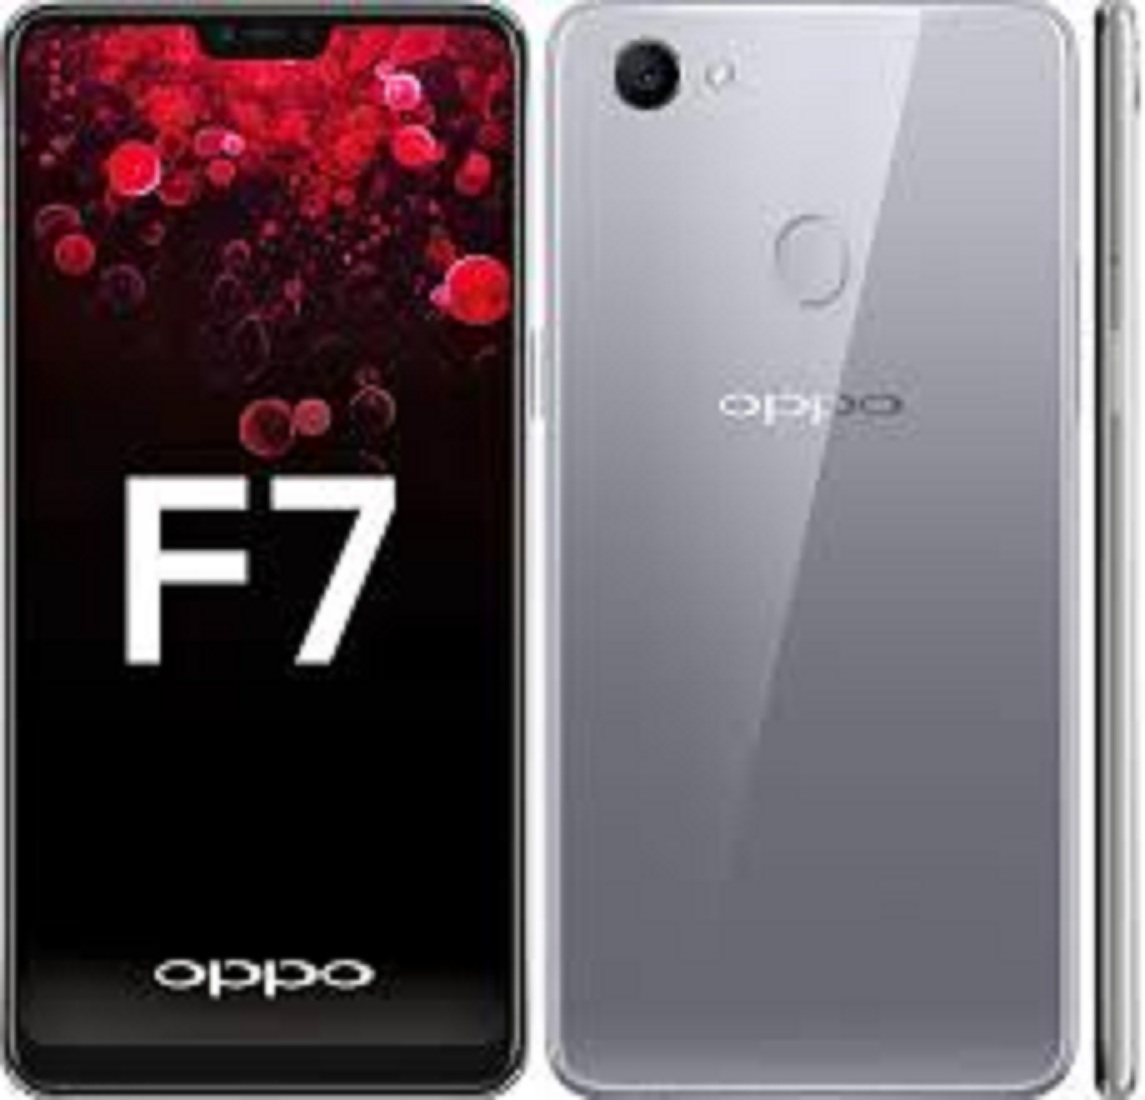 [ Rẻ hơn giá rẻ ] điện thoại Oppo F7 2sim ram 8G/256G máy Chính Hãng Cấu hình Cao cấp Chiến mọi game nặng siêu mượt Bảo hành 12 tháng